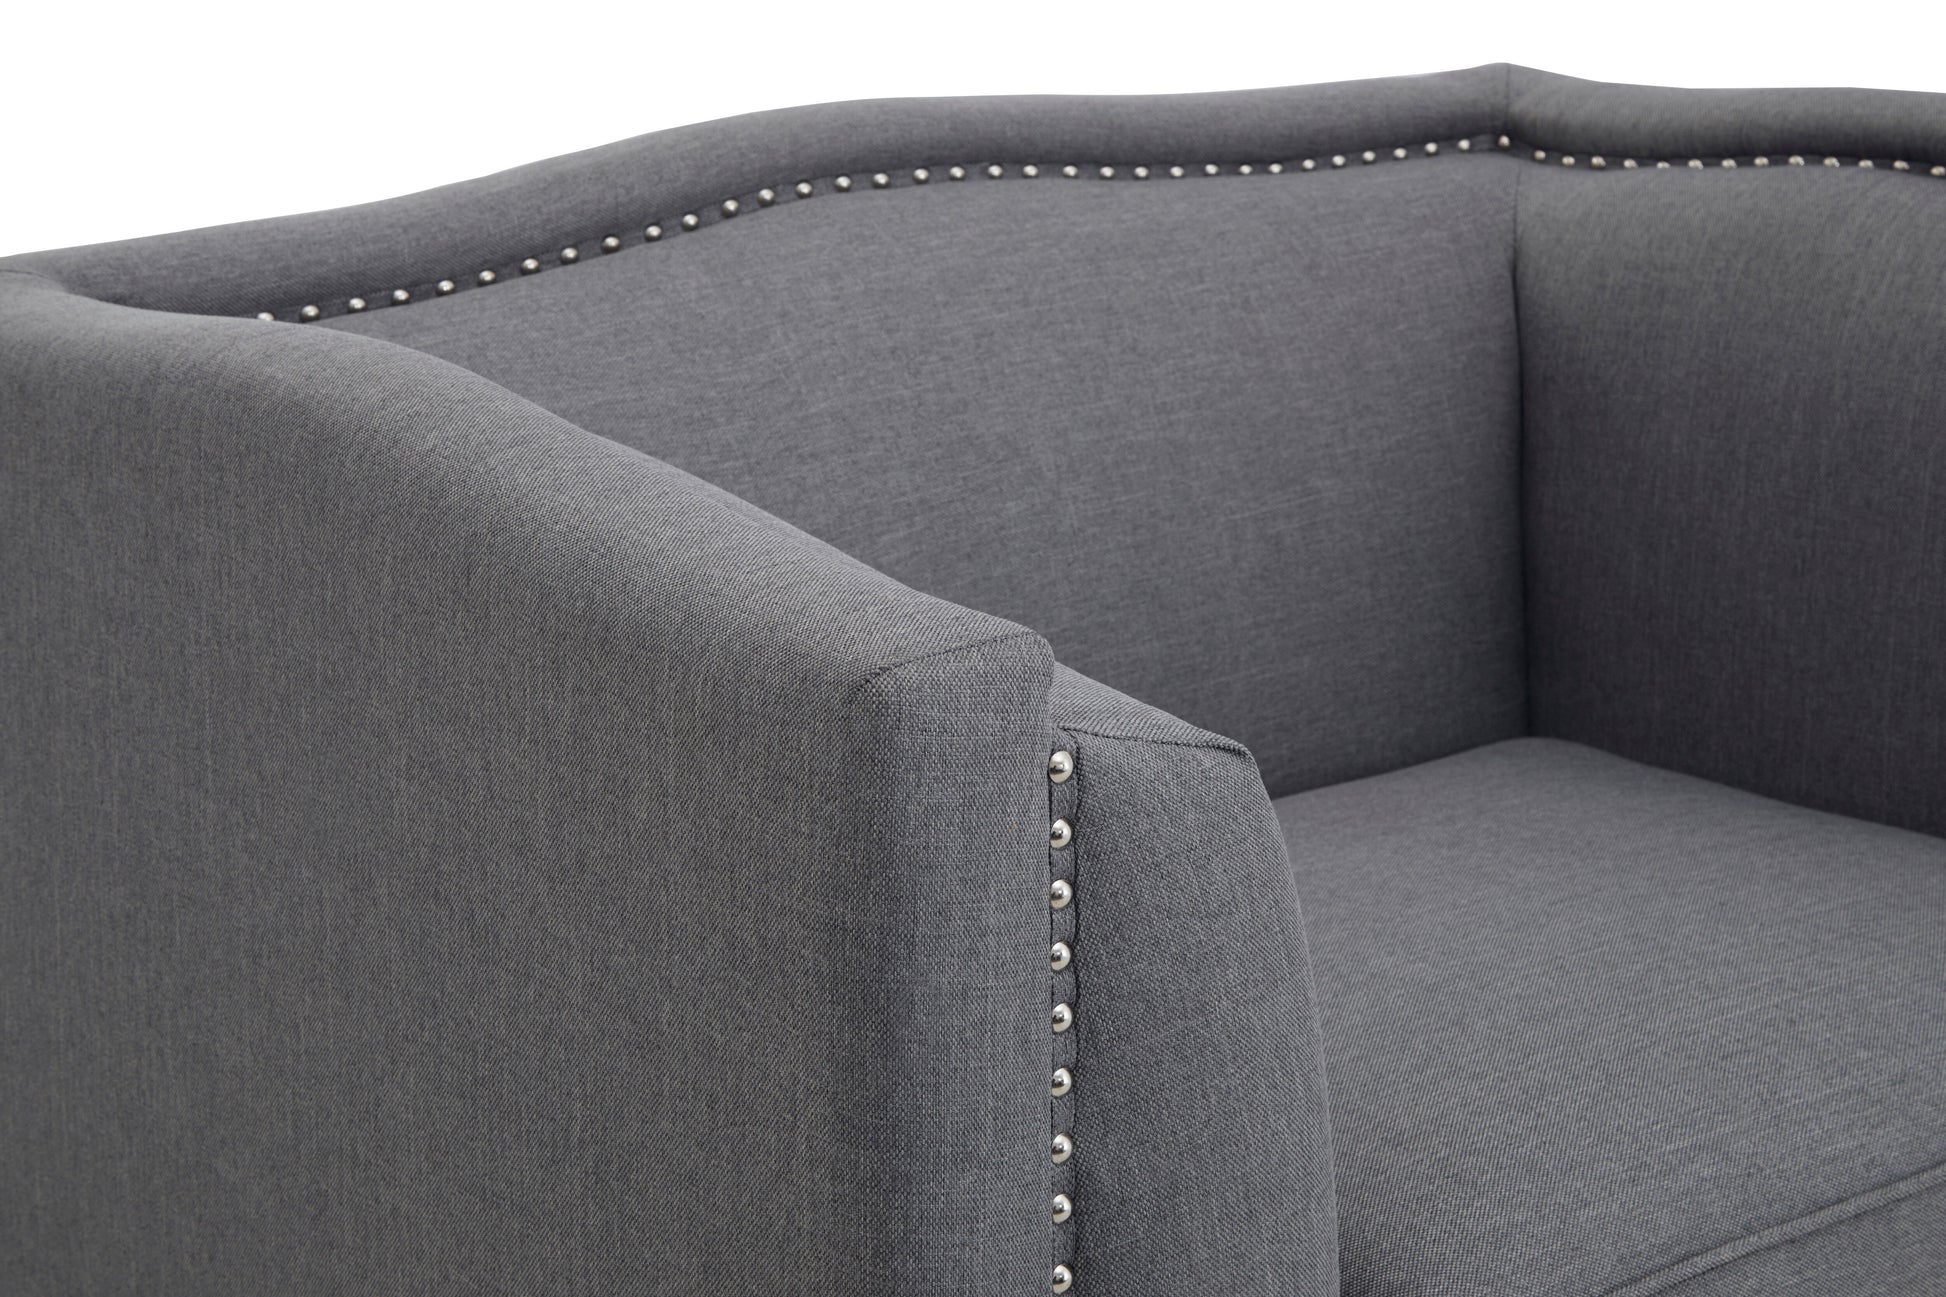 Feya Upholstered Fabric Chair - NIXO Furniture.com